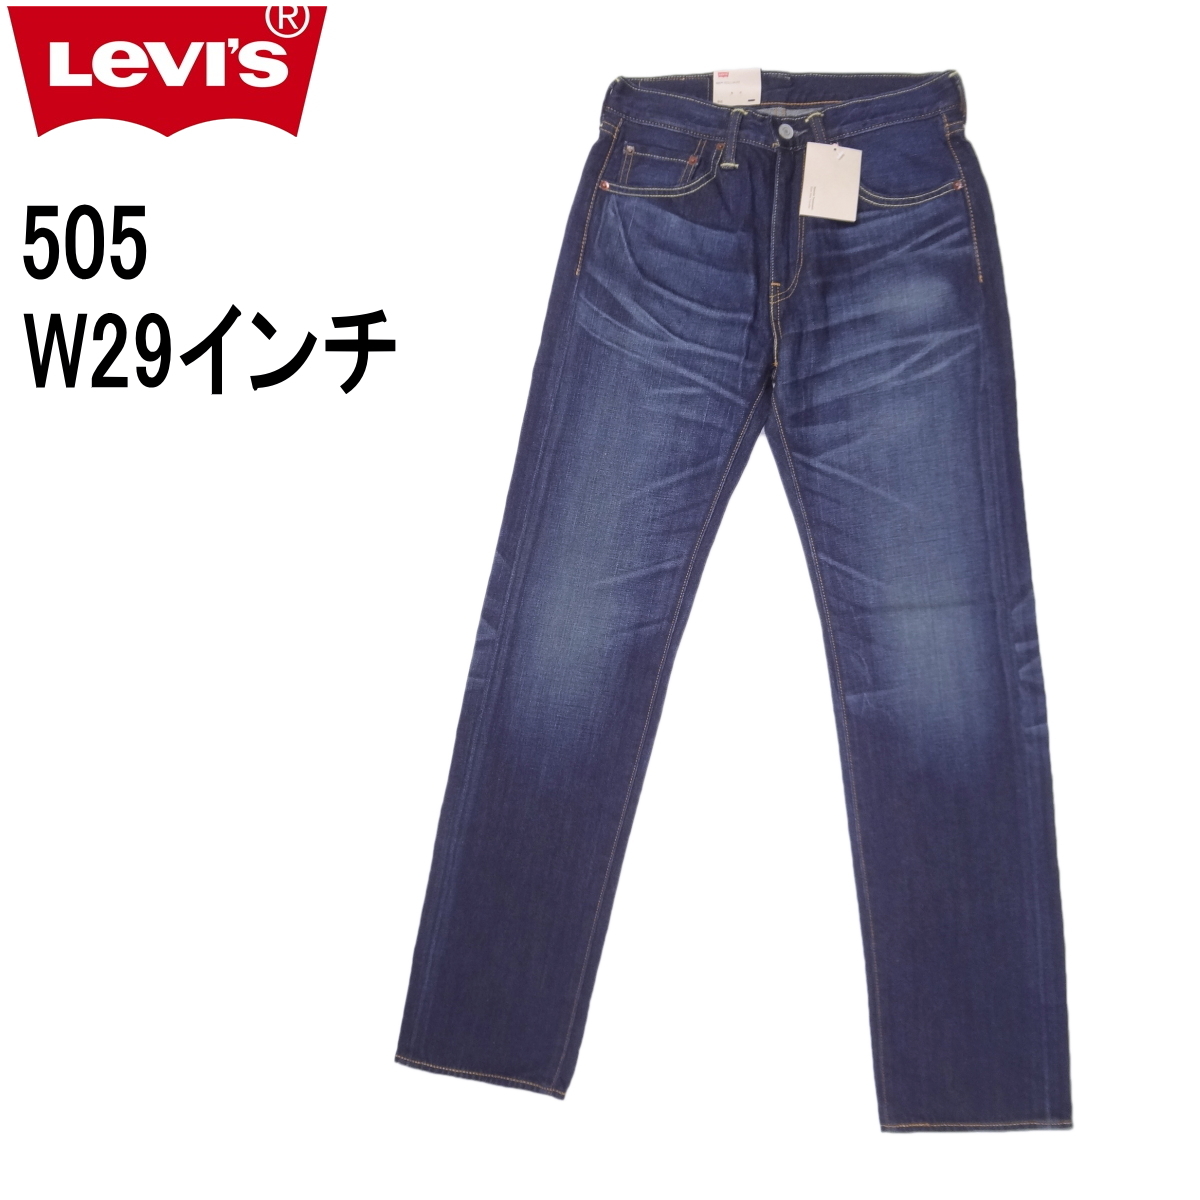 W29インチ リーバイス 505 ジーンズ Levi's レギュラーストレート 裾上げ無料_画像1